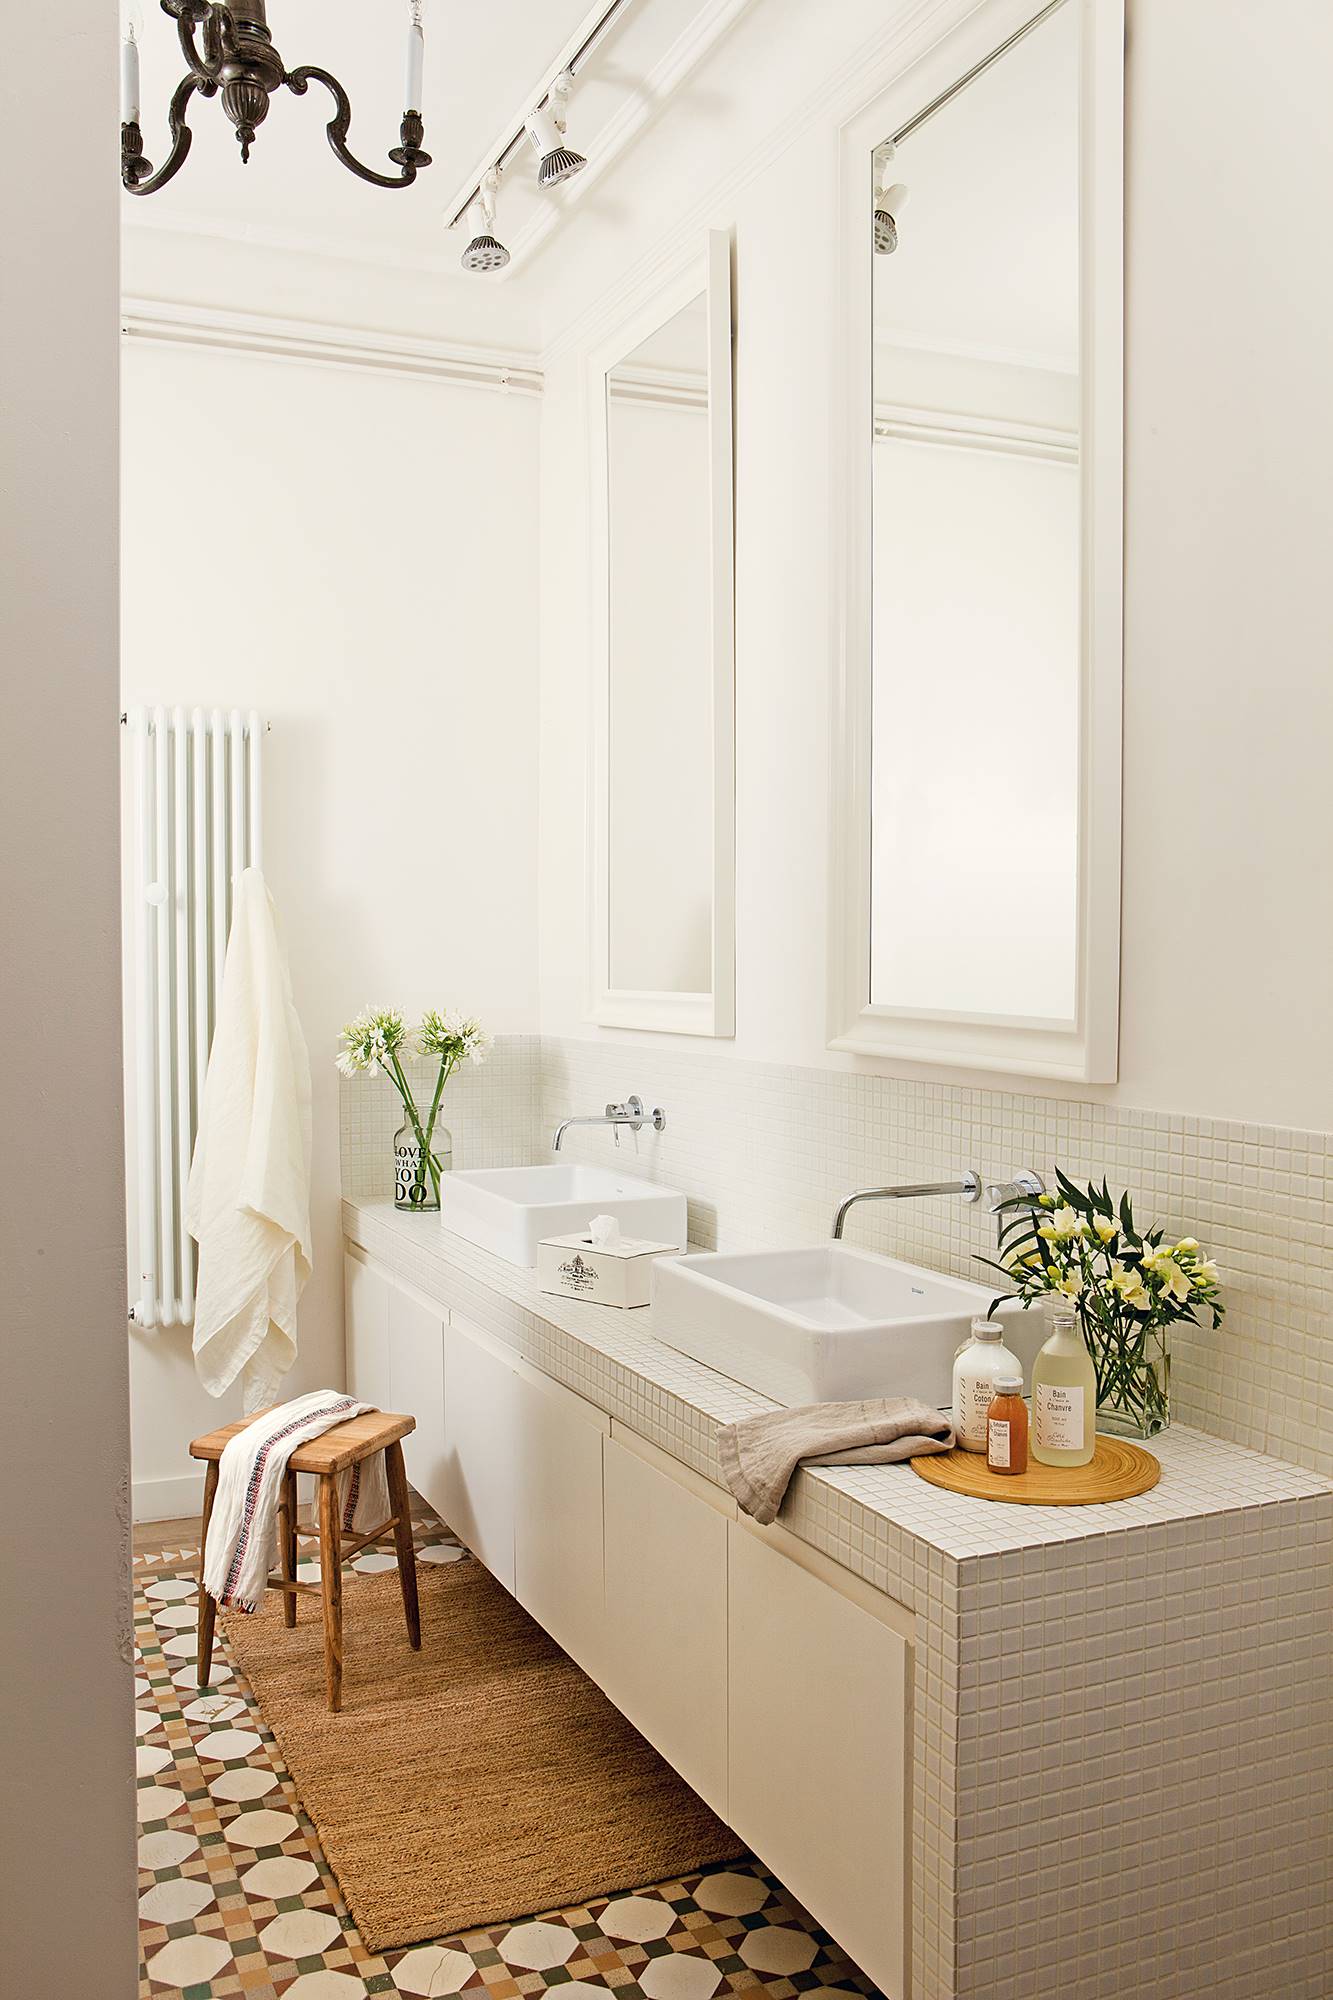 Baño con mueble realizado a medida en blanco, dos espejos, taburete, mosaico en el suelo y radiador para toallas.